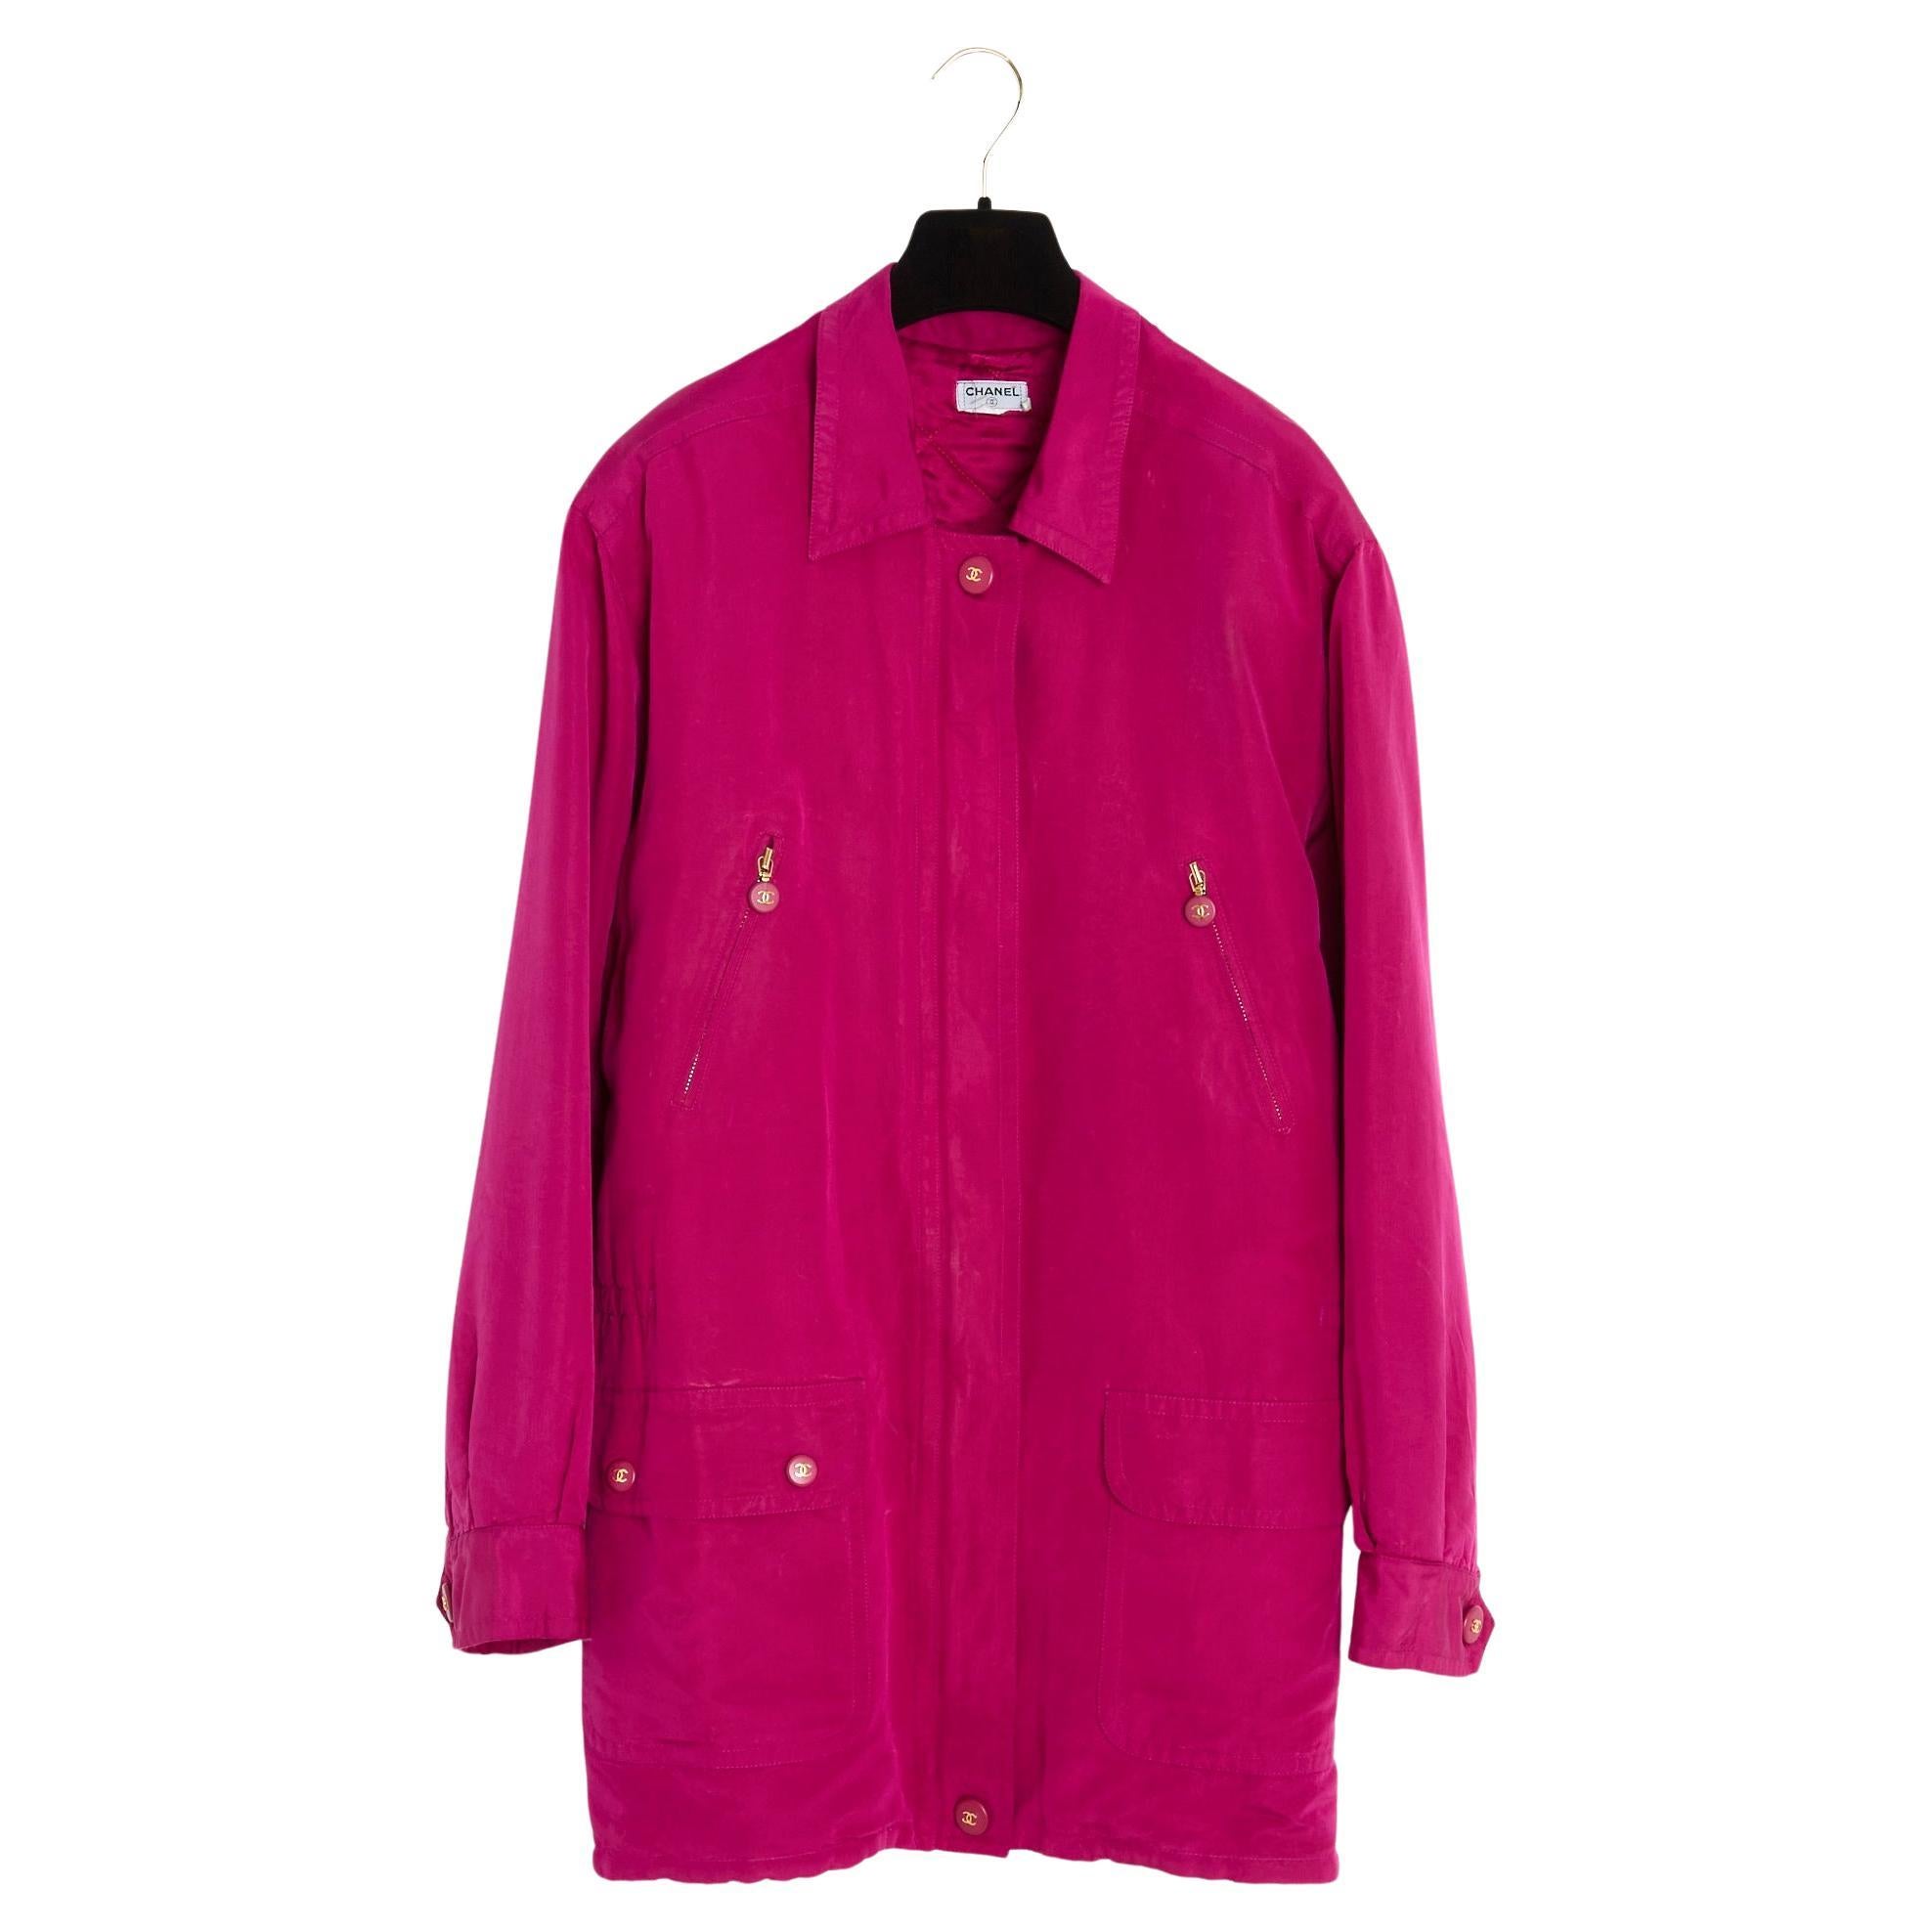 Parka Chanel surdimensionnée rose, taille US 8 à 12, automne-hiver 1994 en vente